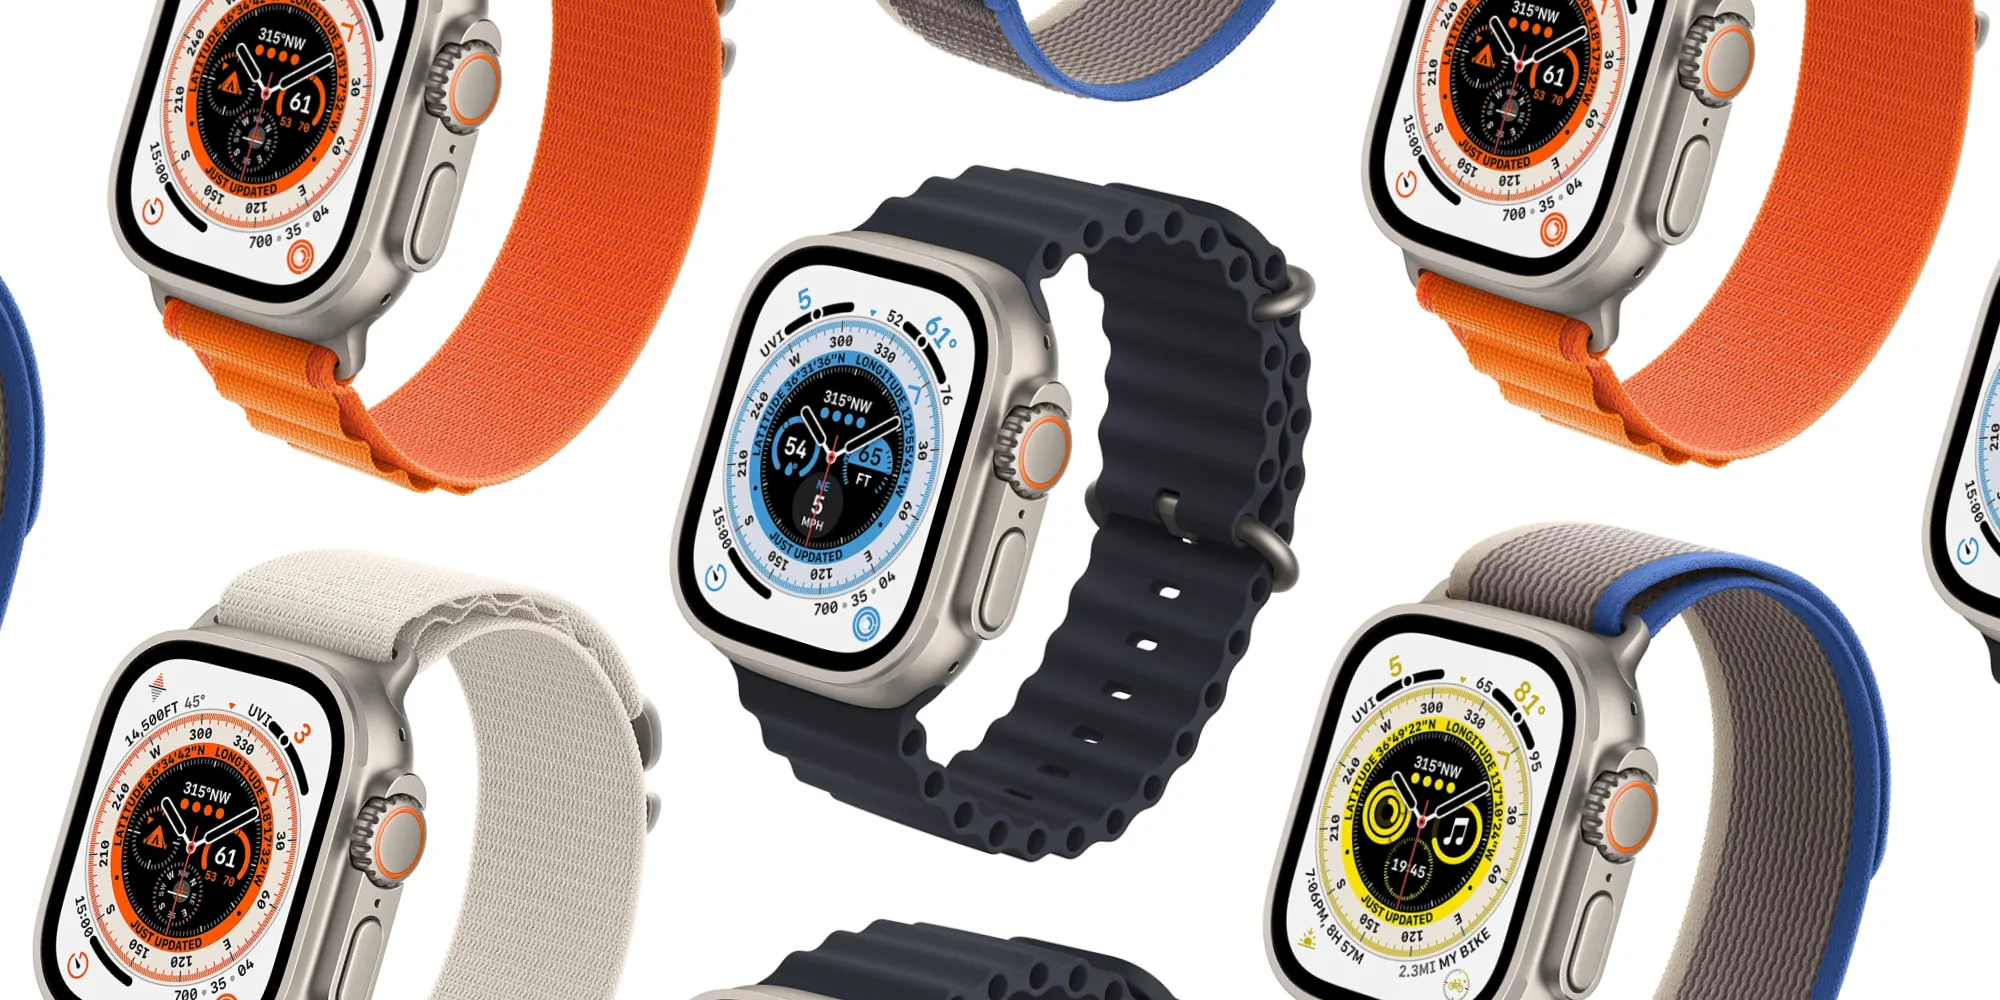 So sánh Apple Watch Ultra 2 với 1: Khác biệt và có những nâng cấp gì?